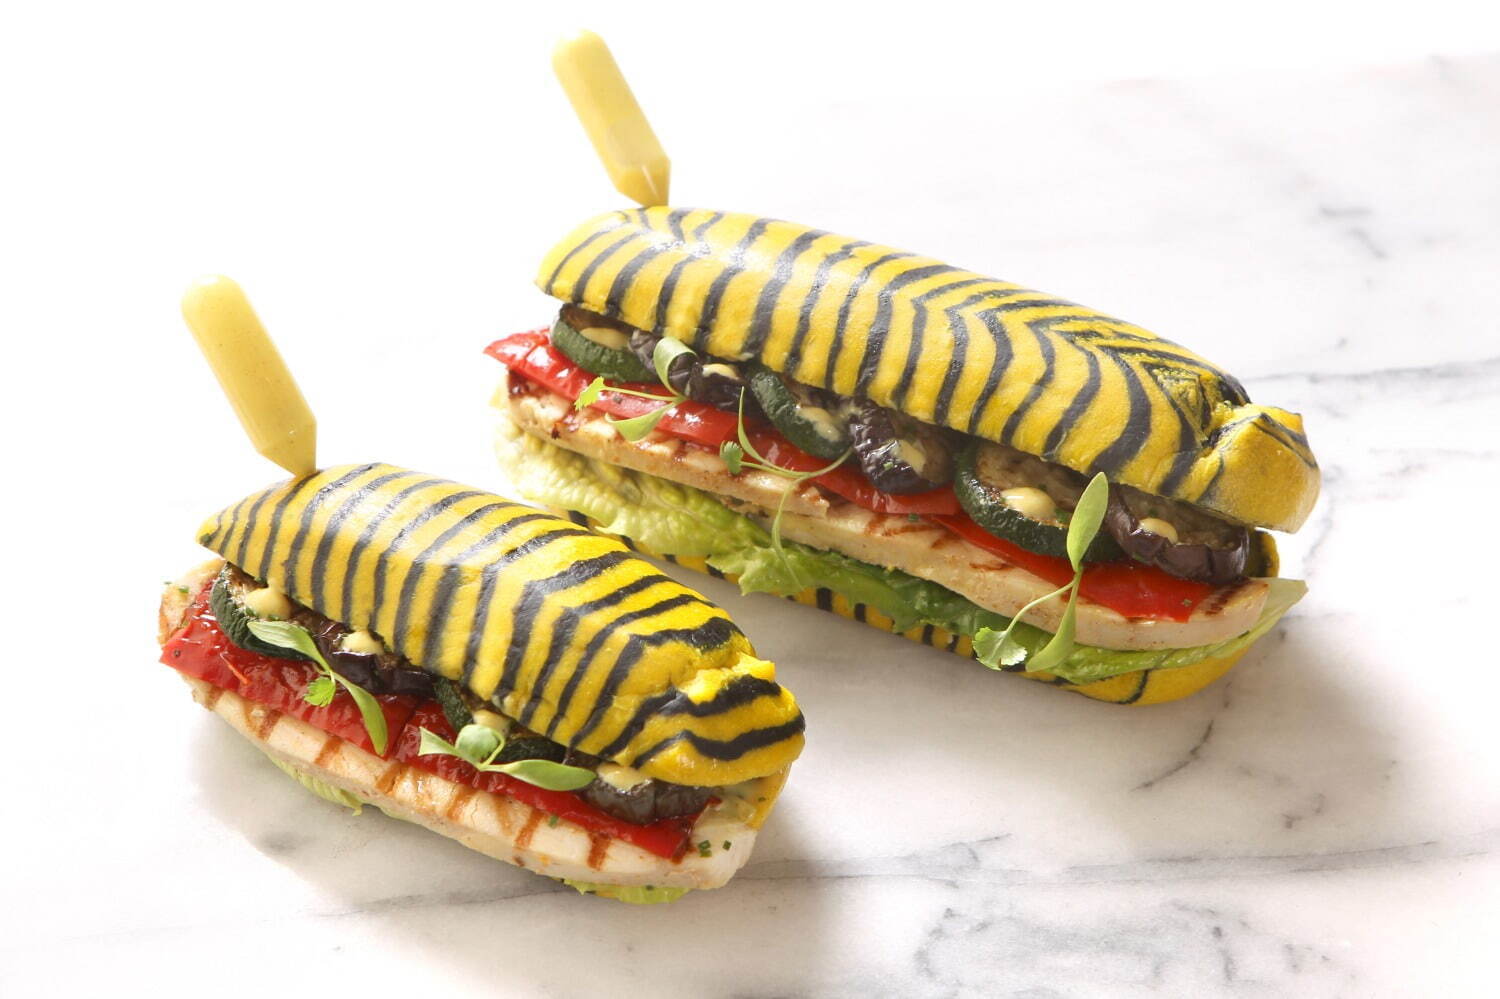 左)子虎のサンドイッチ～タンドリーチキンとグリル野菜～ 790円
右)虎のサンドイッチ～タンドリーチキンとグリル野菜～ 990円